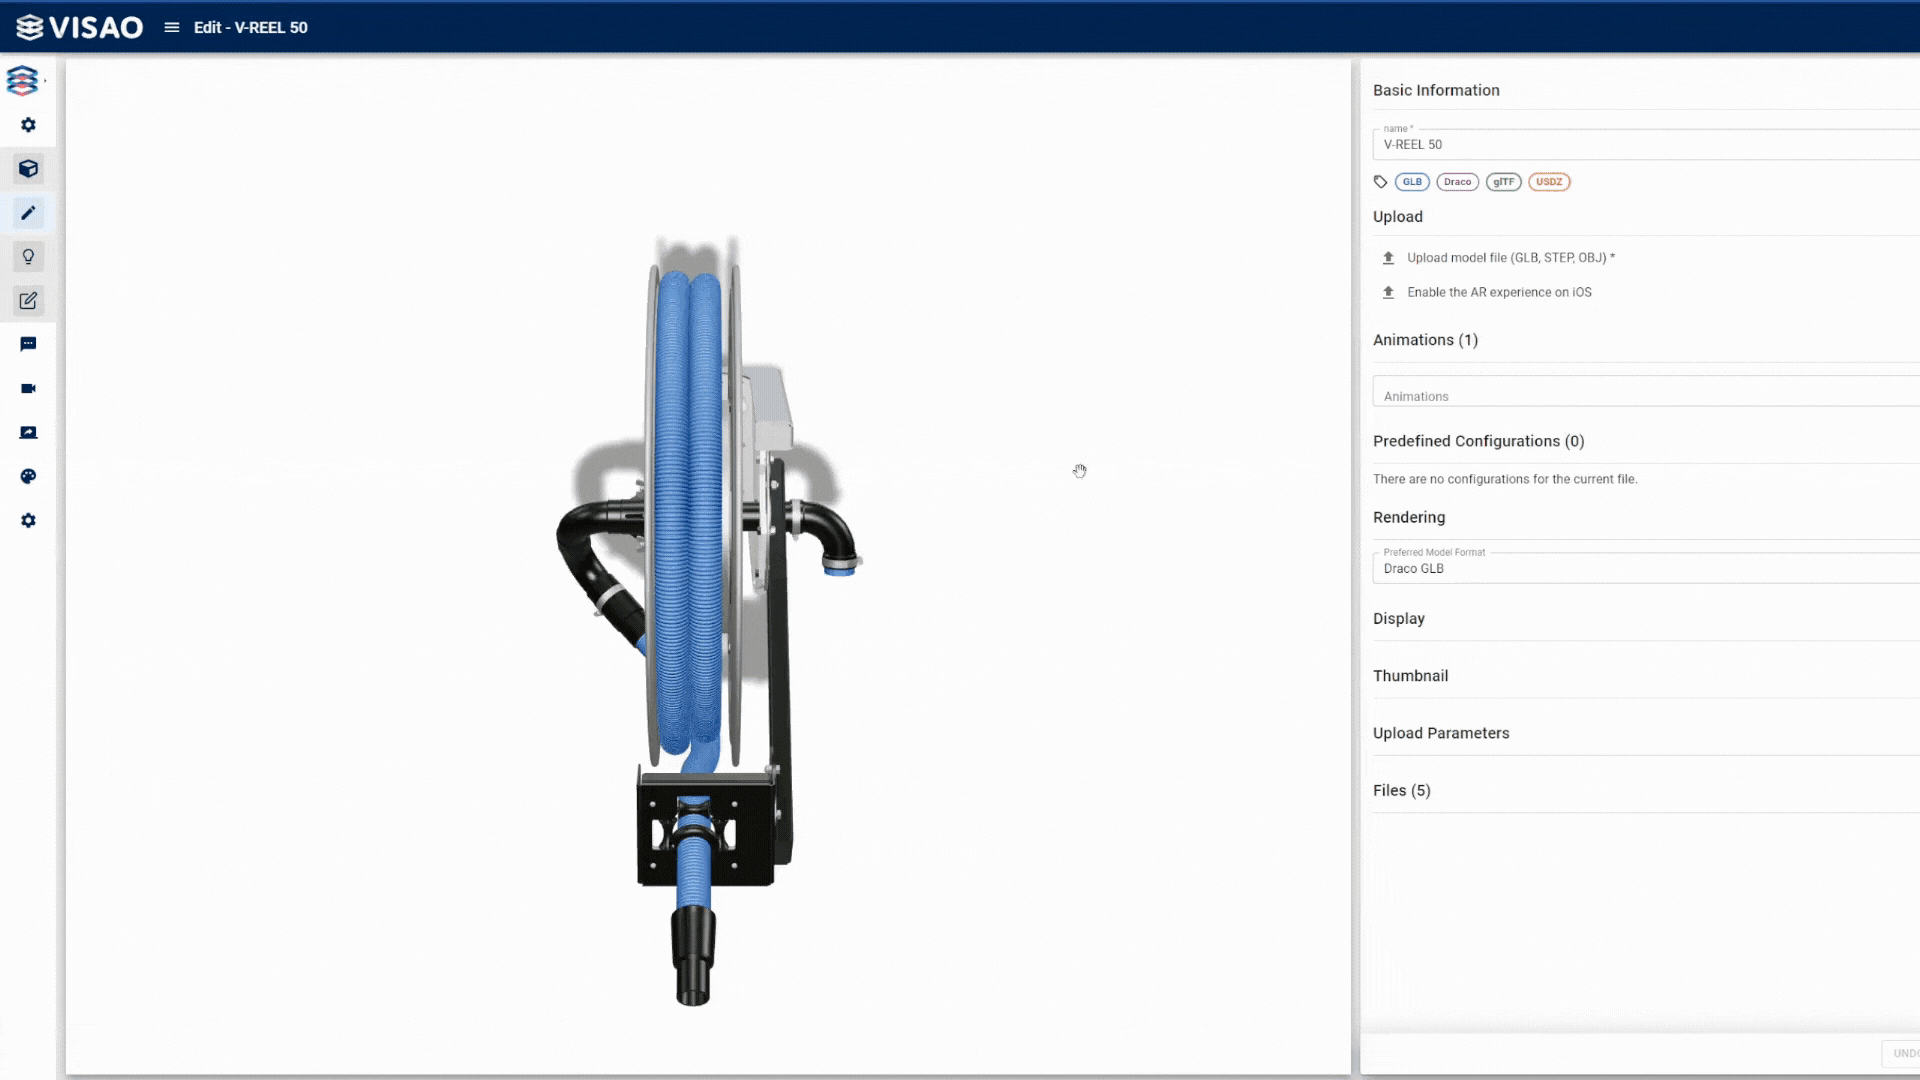 3D model editor in Visao platform